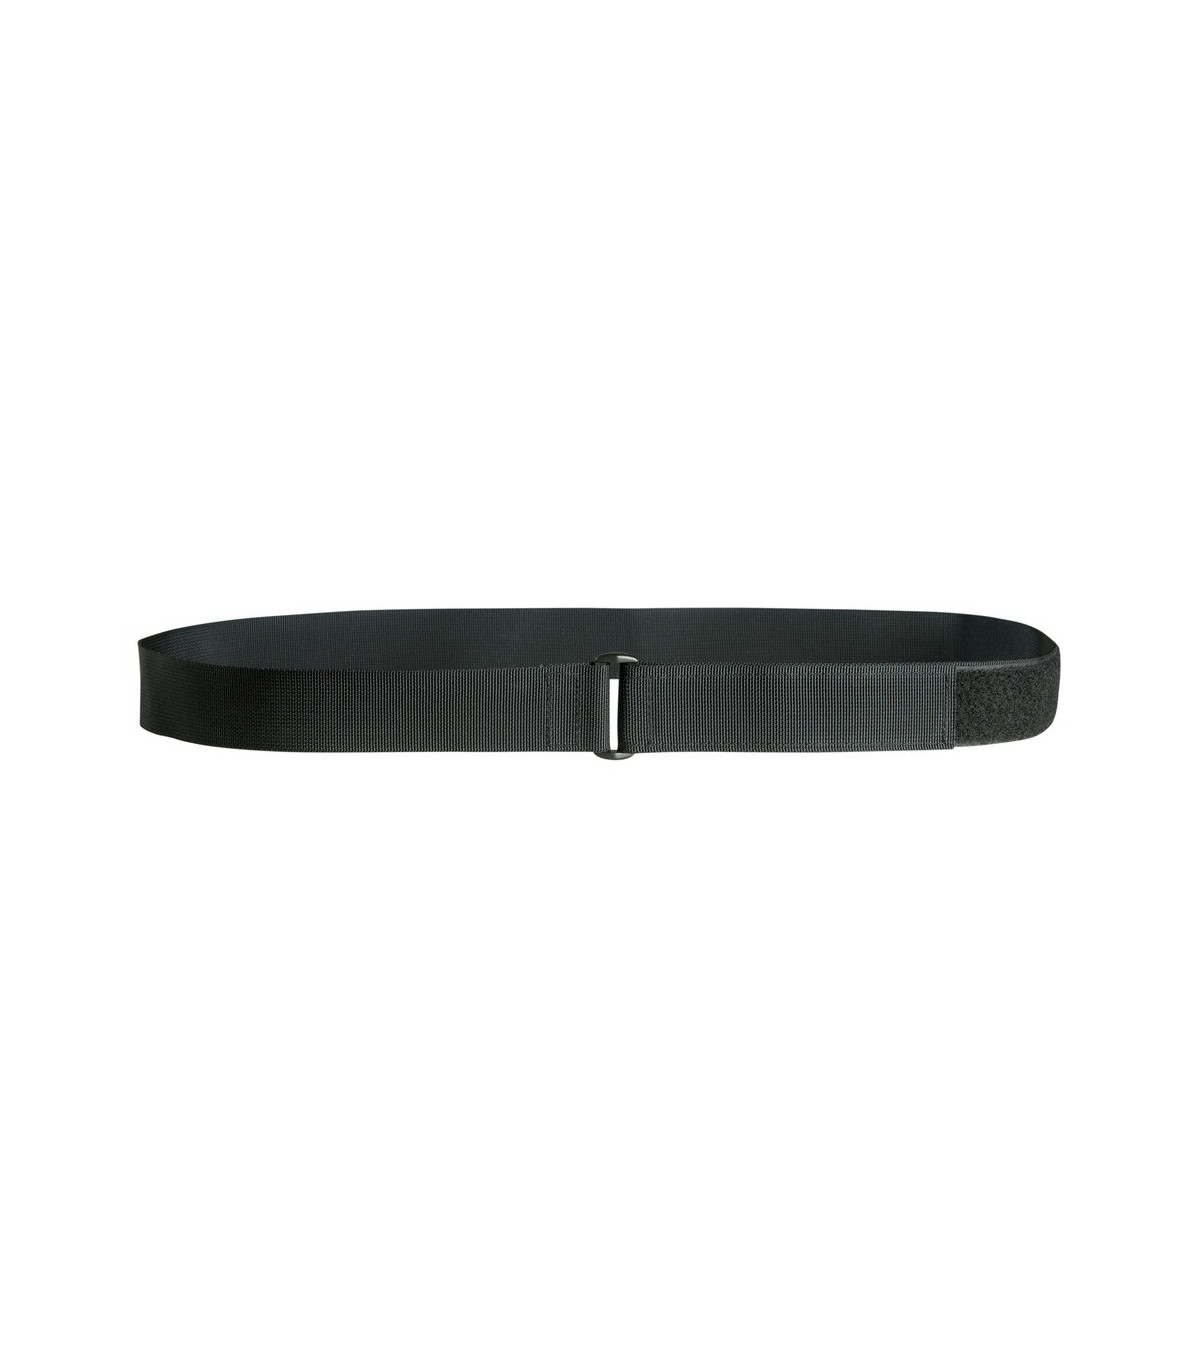 noir Ceinturon ceinture avec fermeture velcro 90-140 cm de longueur 